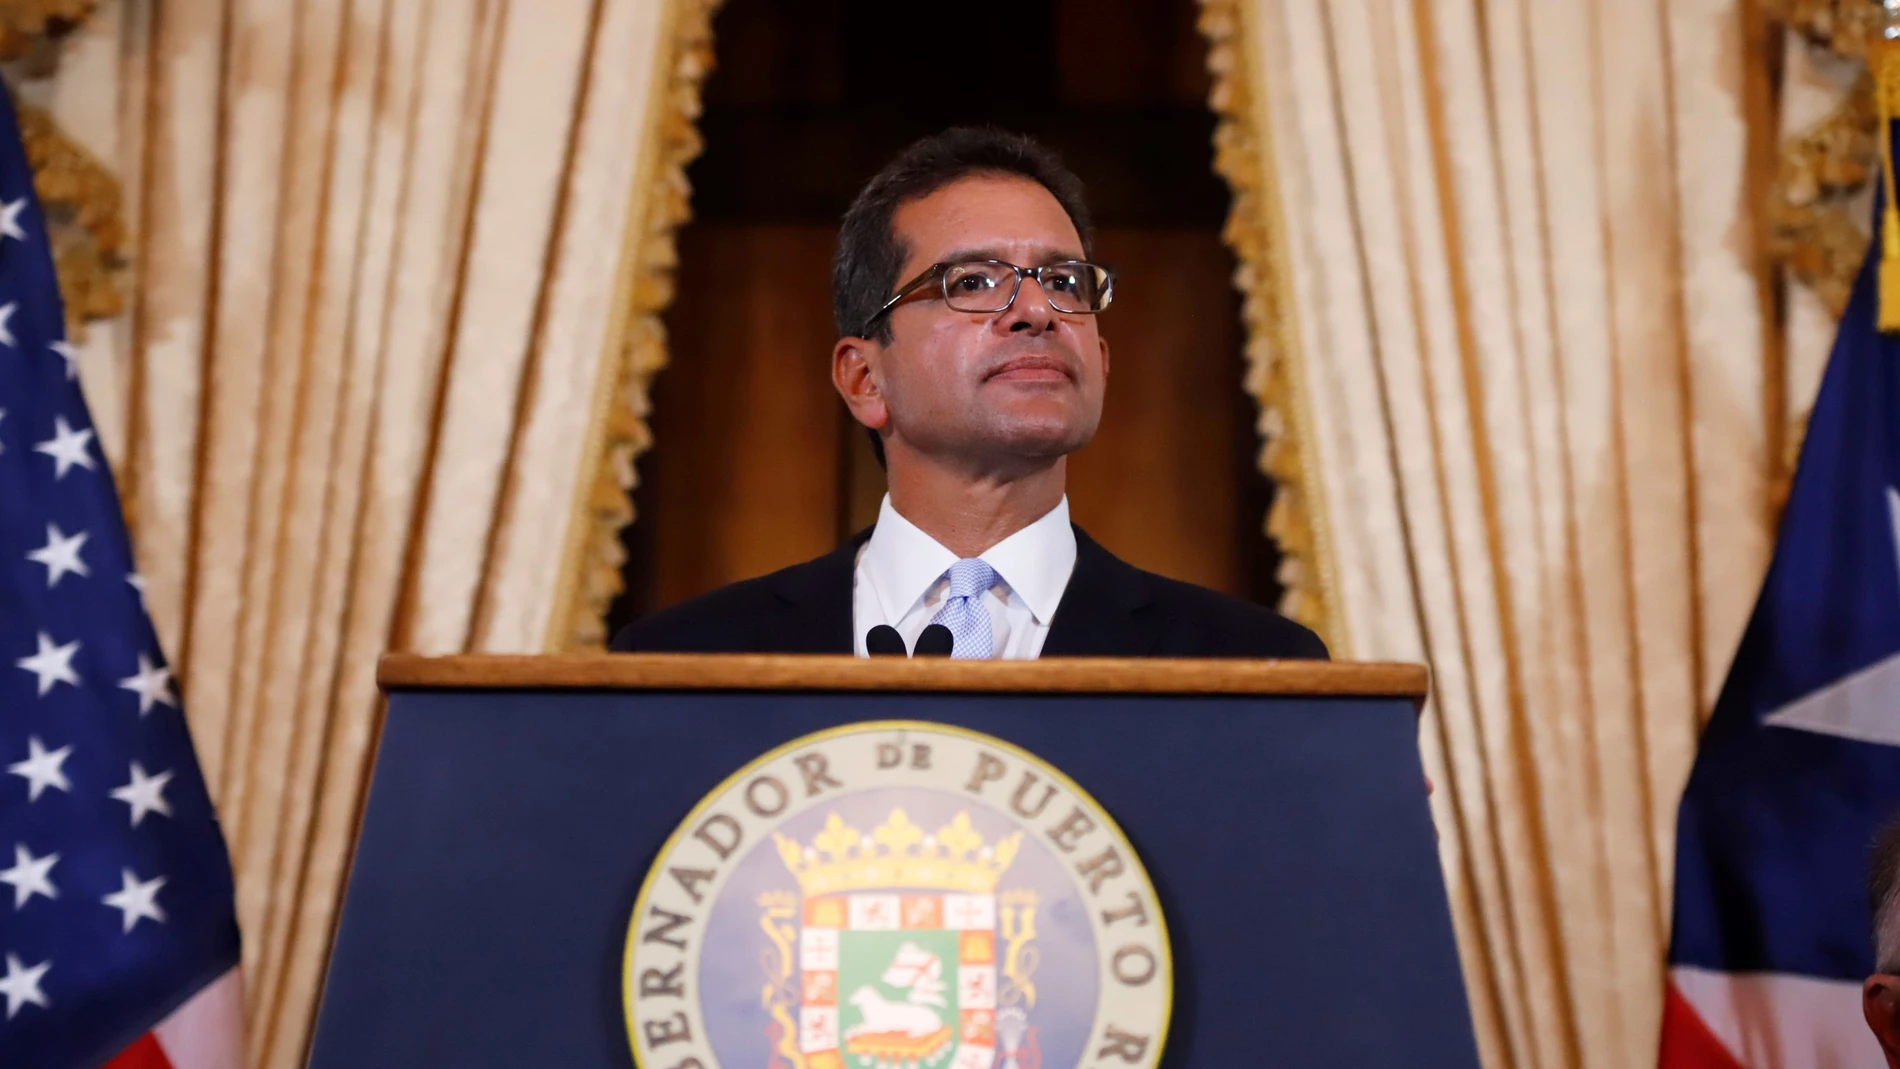 El abogado Pedro Pierluisi, se dirige a los medios tras ser juramentado como Gobernador de Puerto Rico